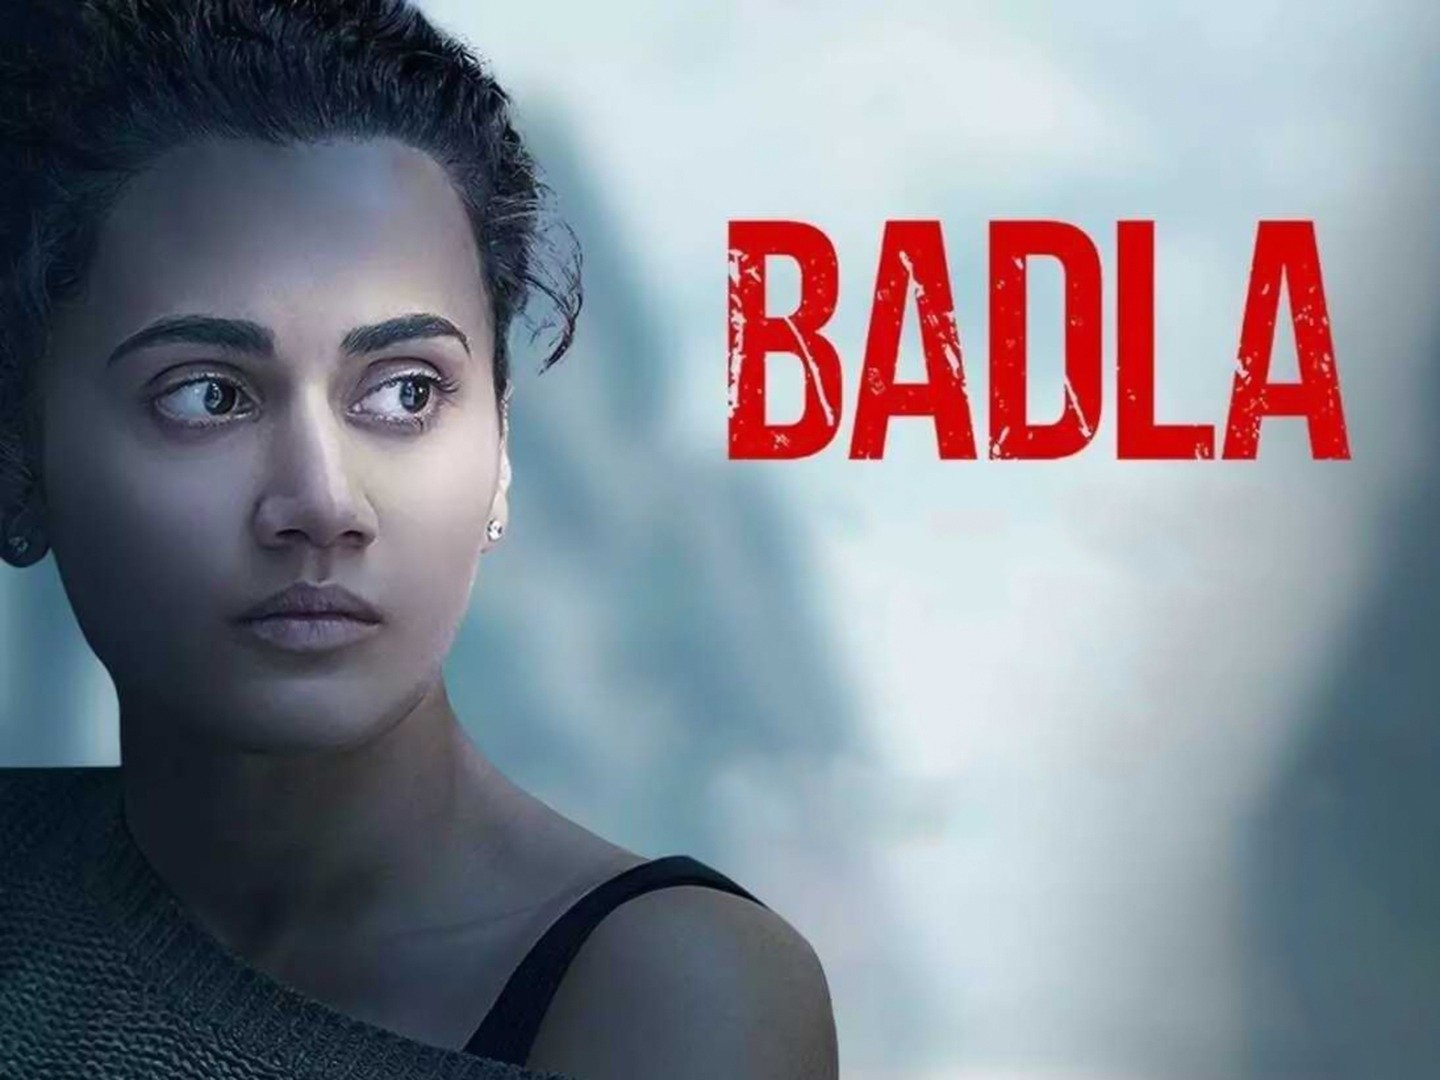 Badla Full Movie | Ravi Teja, Prakash Raj, Meera Jasmine | Hindi Dubbed  Blockbuster Movie - YouTube